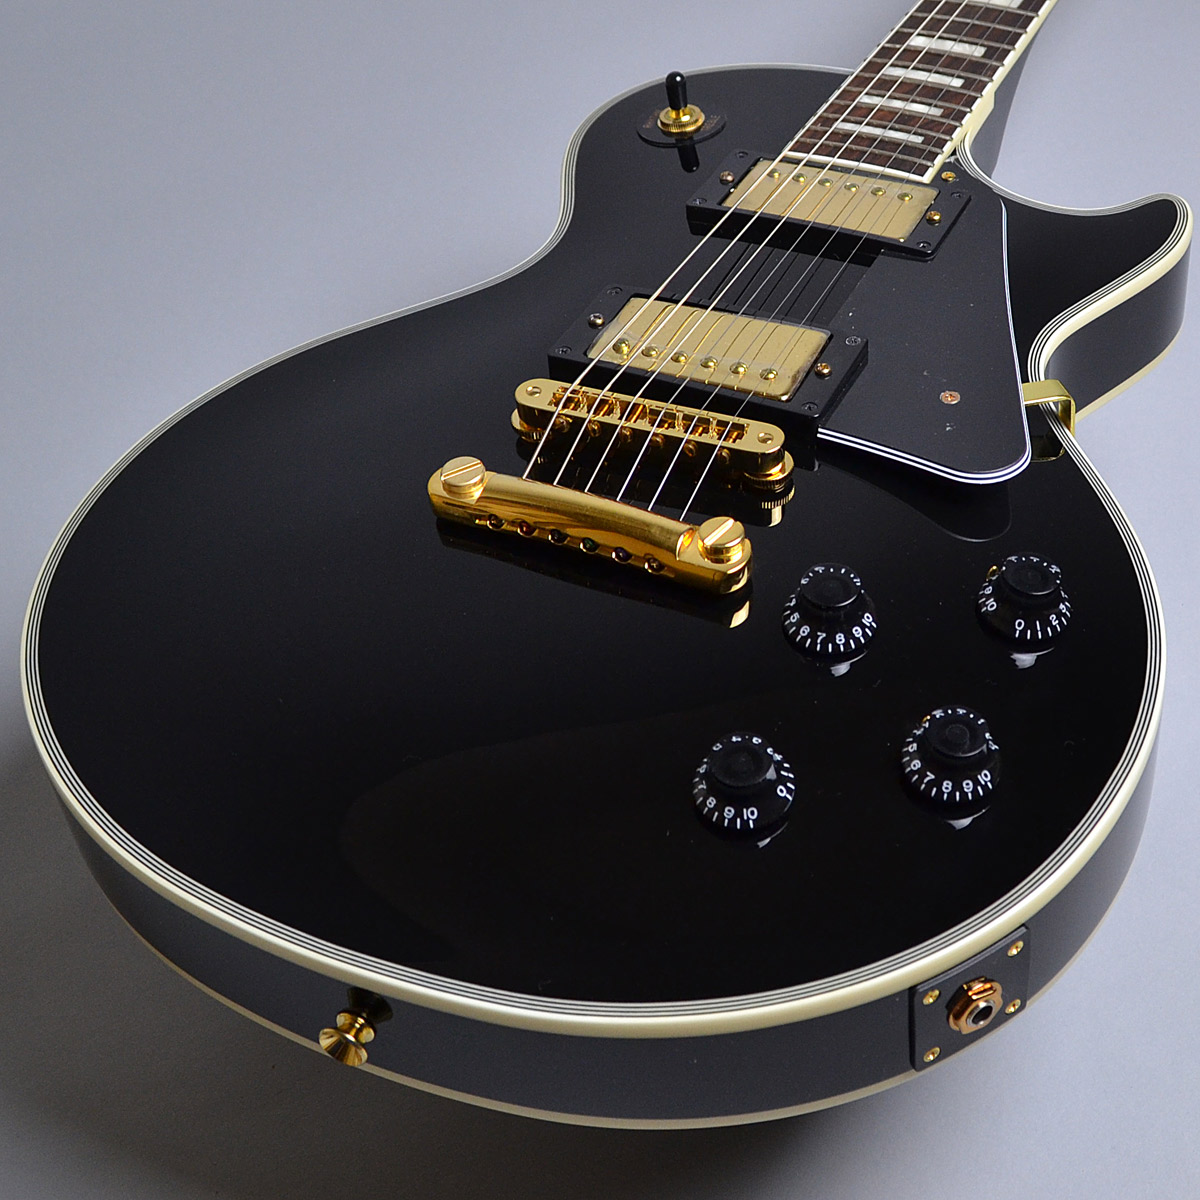 Burny Srlc55 Black 保障 レスポールカスタムタイプ 新品特価 バーニー エレキギター